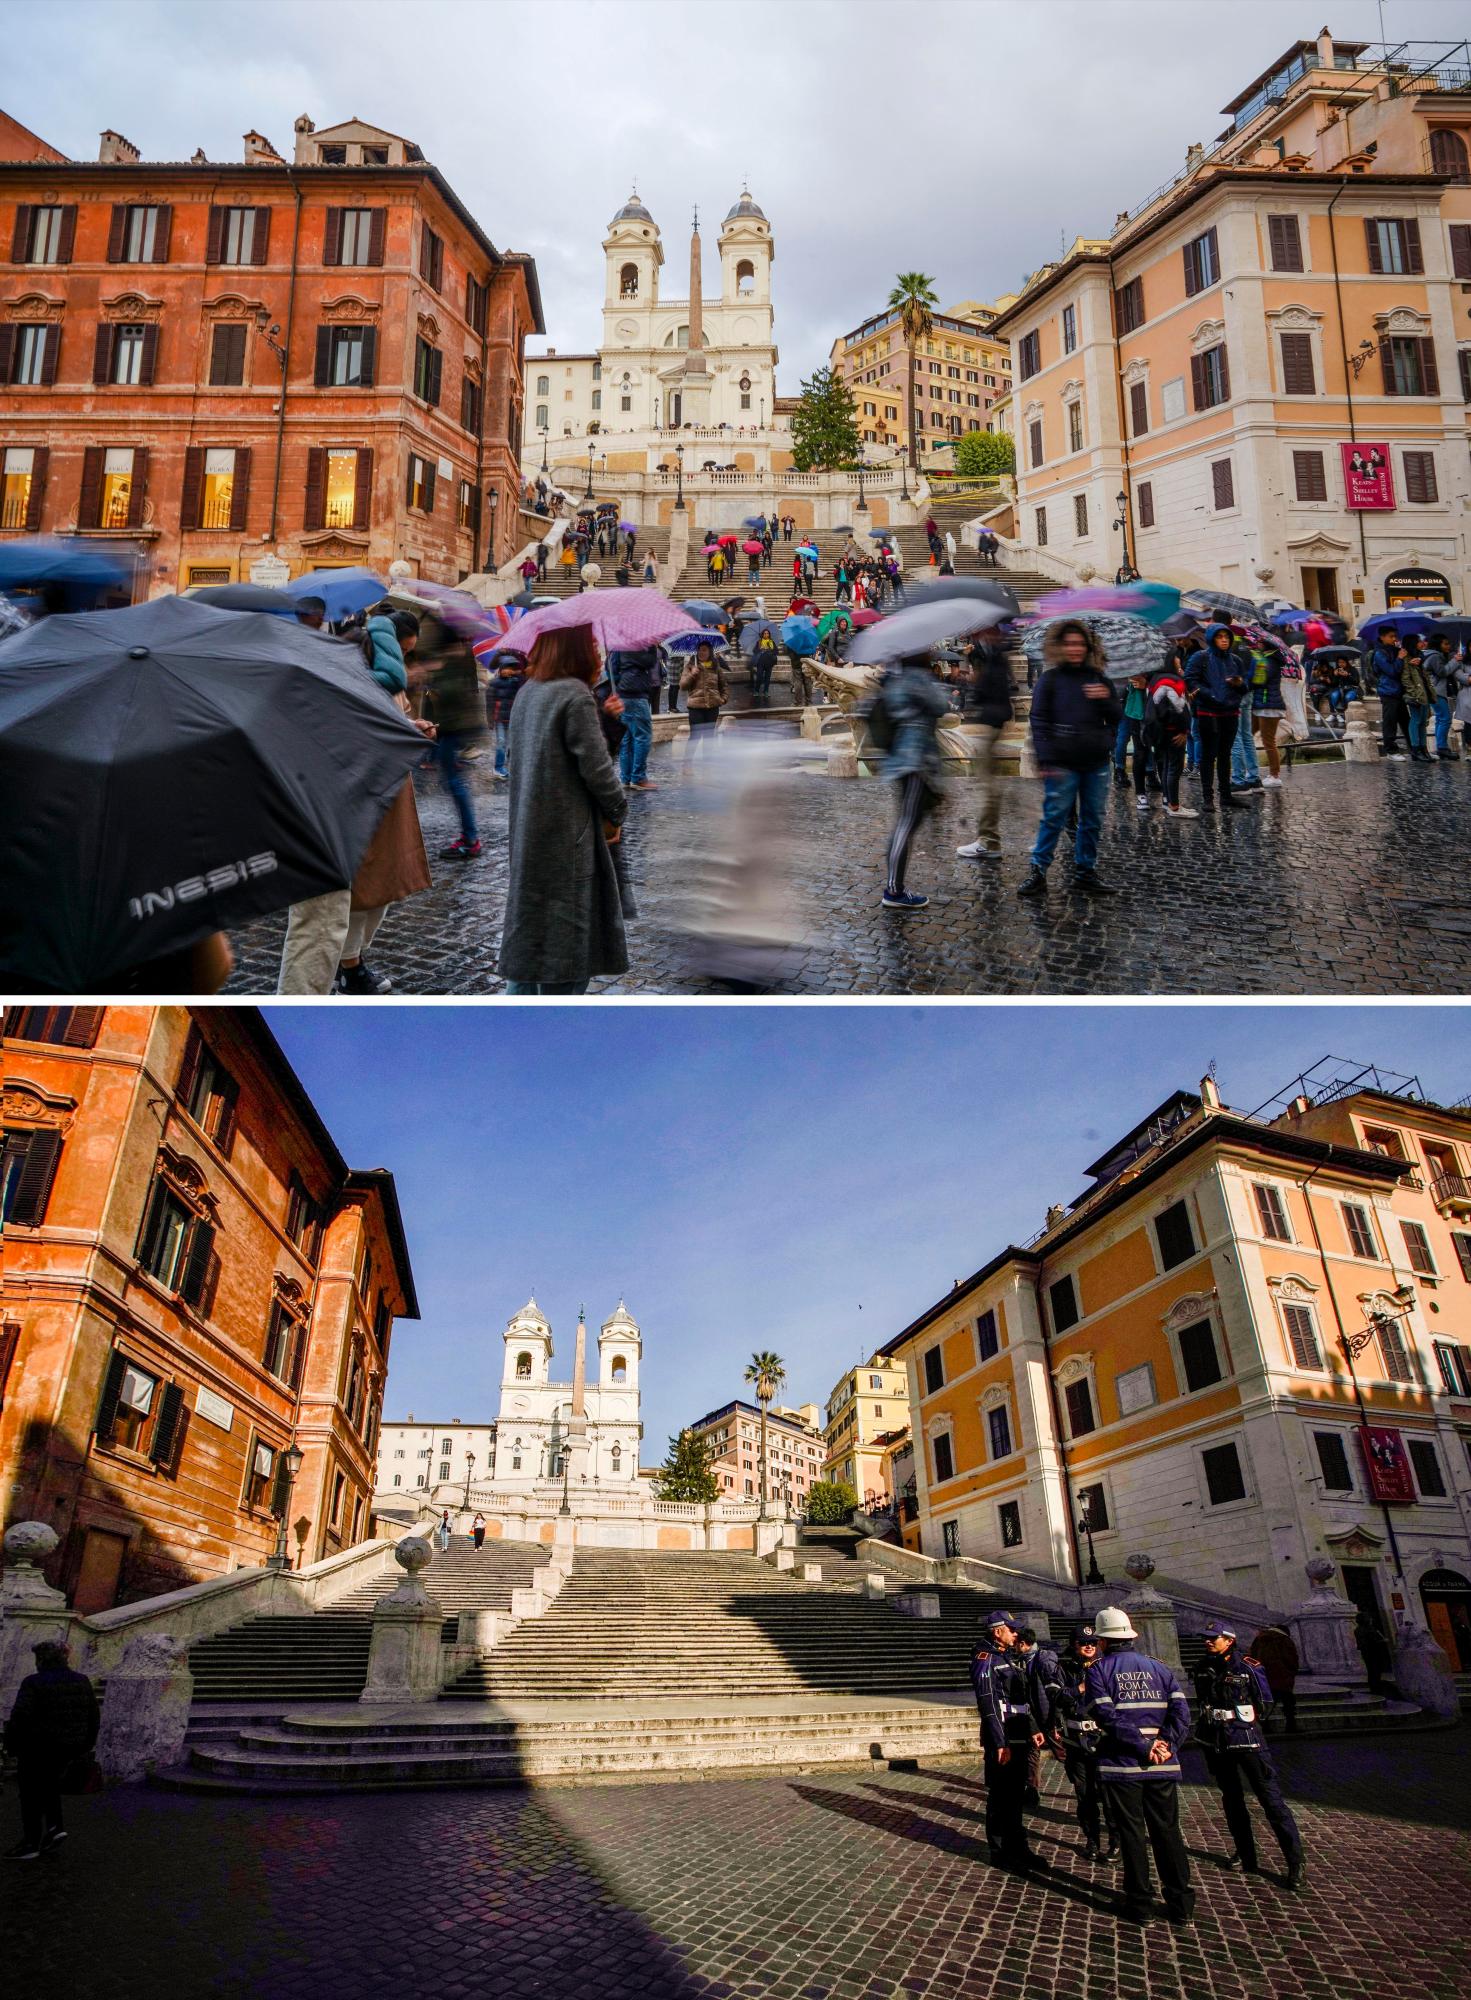  En esta imagen combinada, las escaleras de la Plaza de España de Roma a las 16:03 del jueves 14 de noviembre de 2019, arriba, y el martes 10 de marzo de 2020 a las 17:36. El grave brote de un nuevo coronavirus en Italia ha vaciado los monumentos de turistas y romanos. 